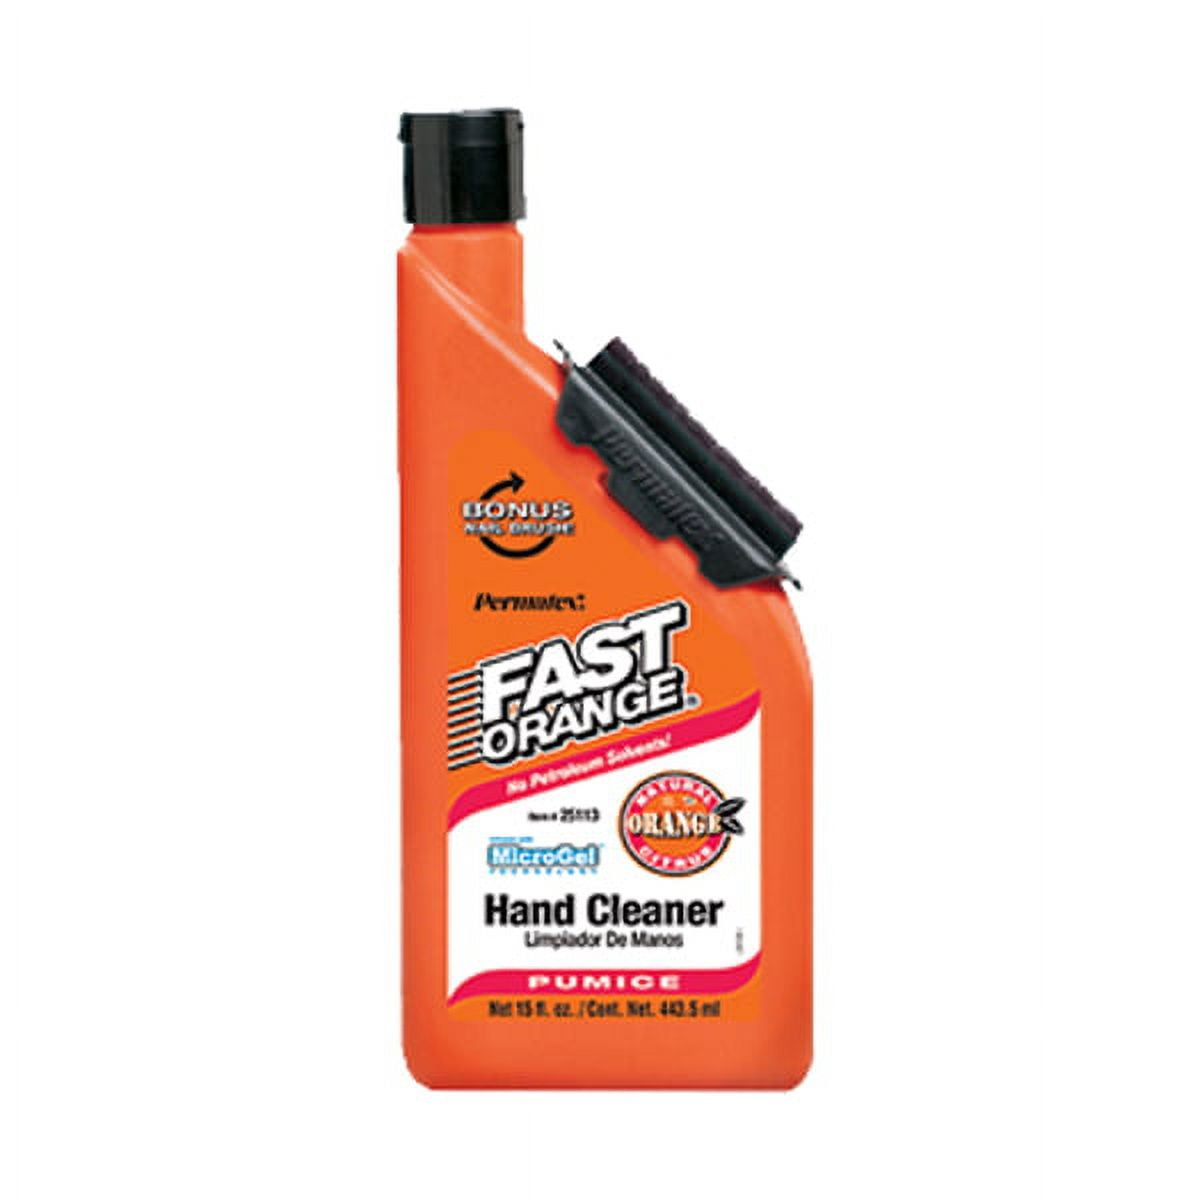 Fast Orange Hand Cleaner - Pumice - 397 g 20864